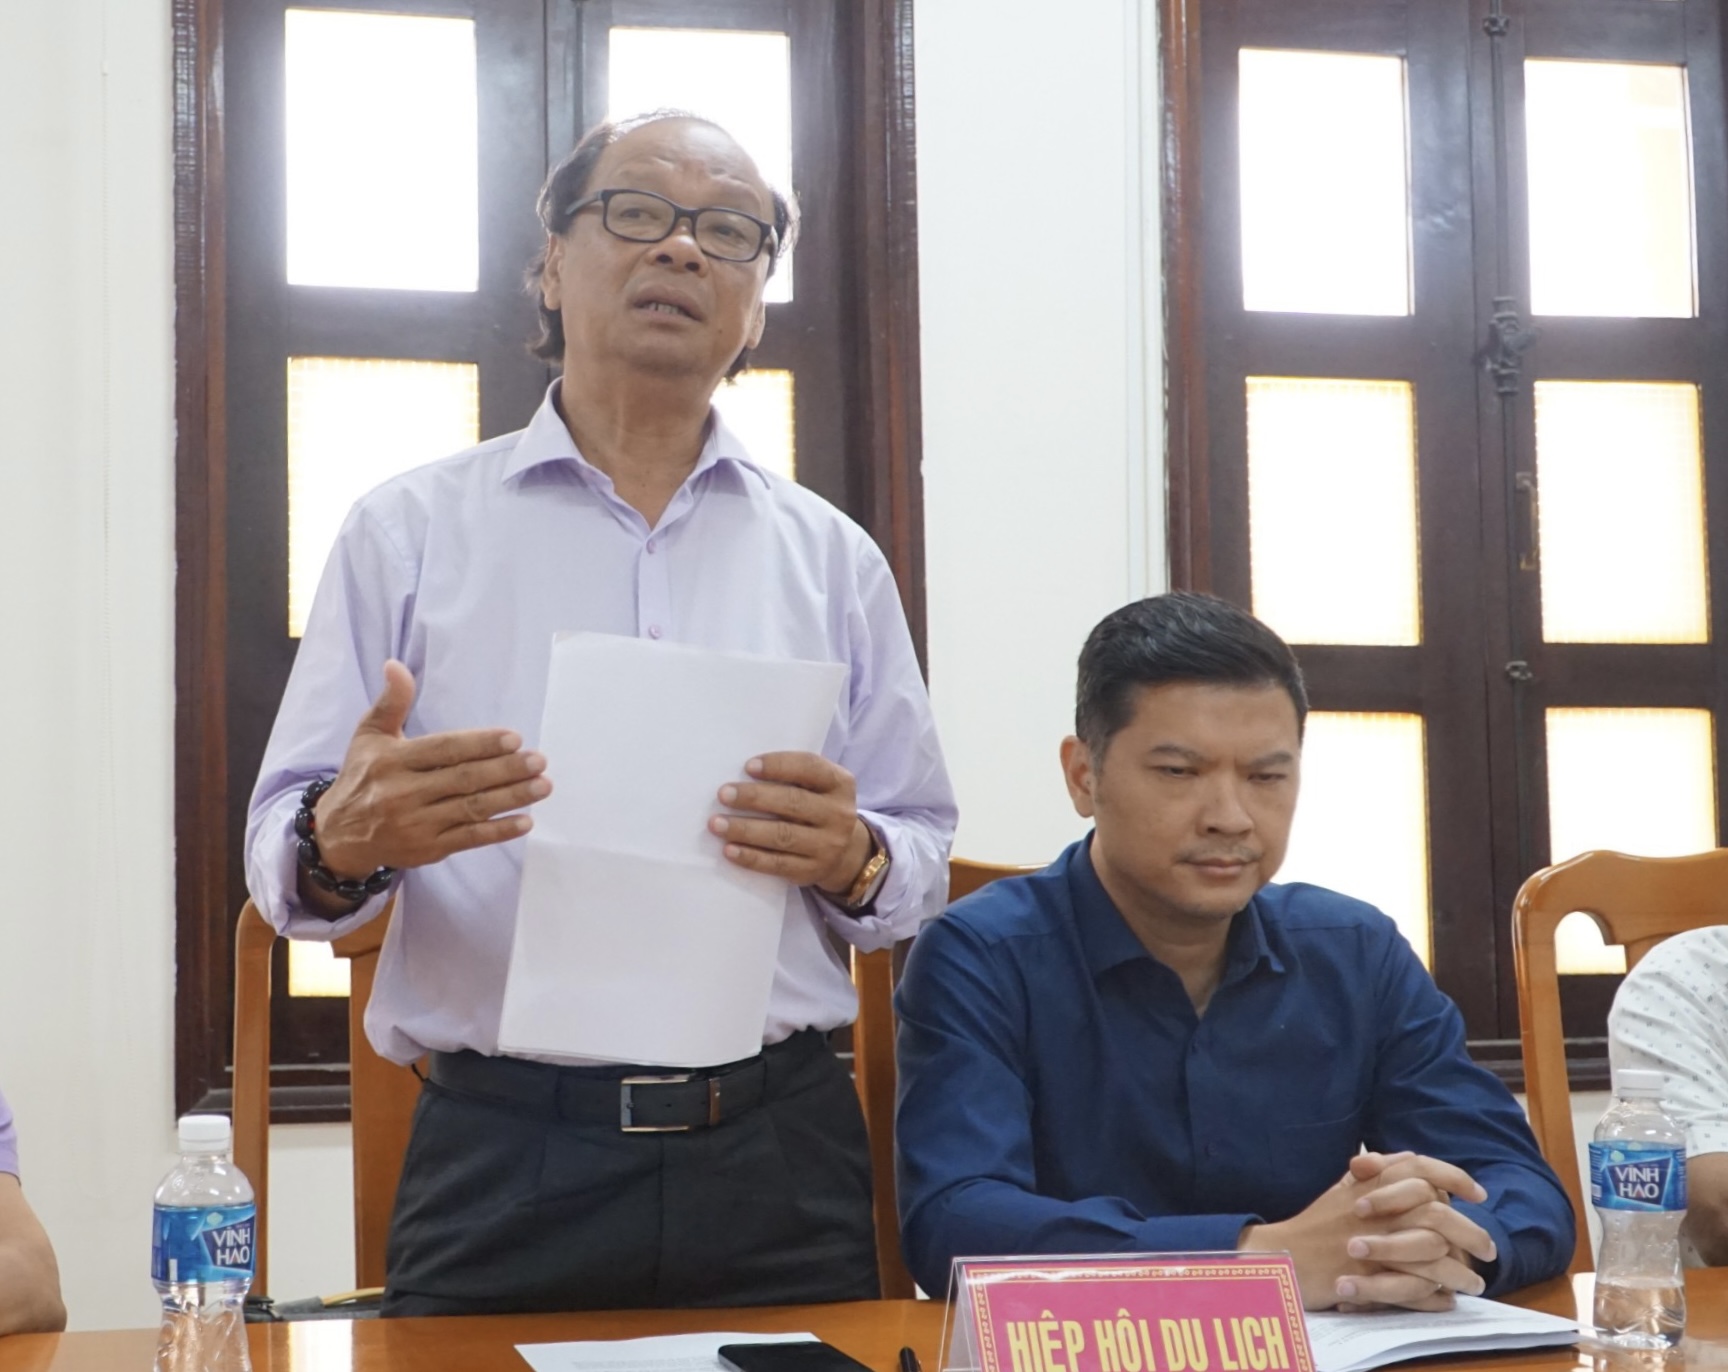 Ông Nguyễn Văn Khoa, Chủ tịch Hiệp hội Du lịch Bình Thuận trả lời về phản ánh. Ảnh: Duy Tuấn